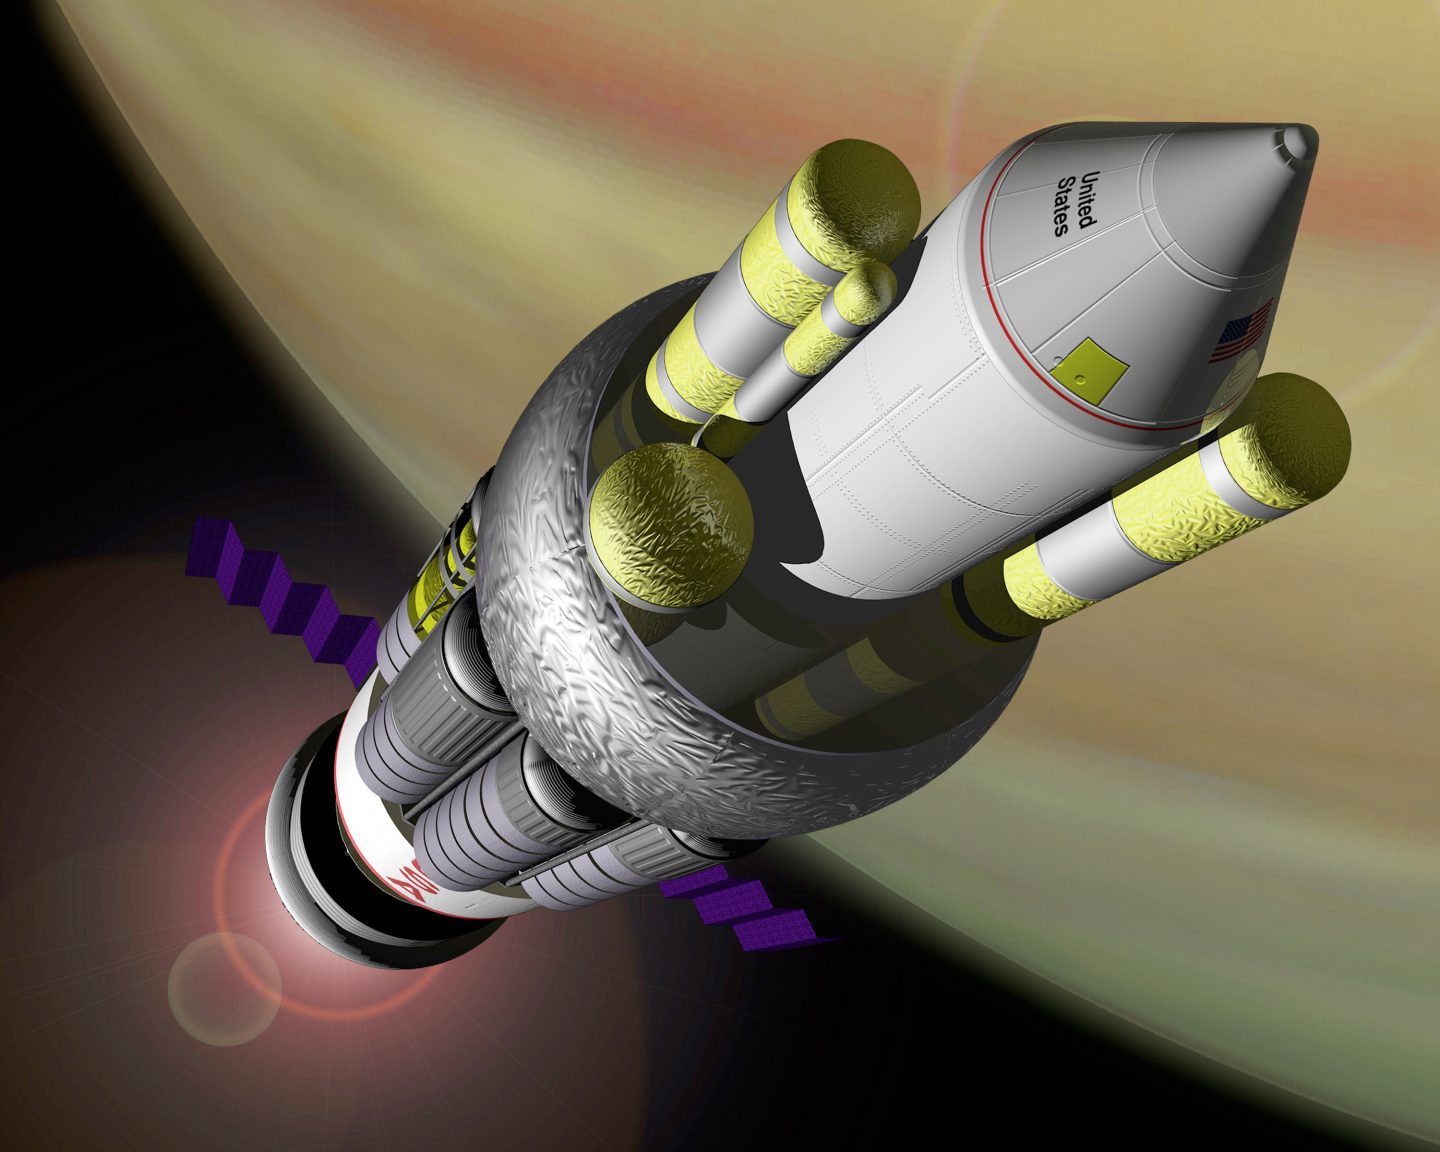 صاروخ ناسا الفضائي ذي الدفع النووي يمكنه الوصول إلى المريخ خلال 45 يومًا